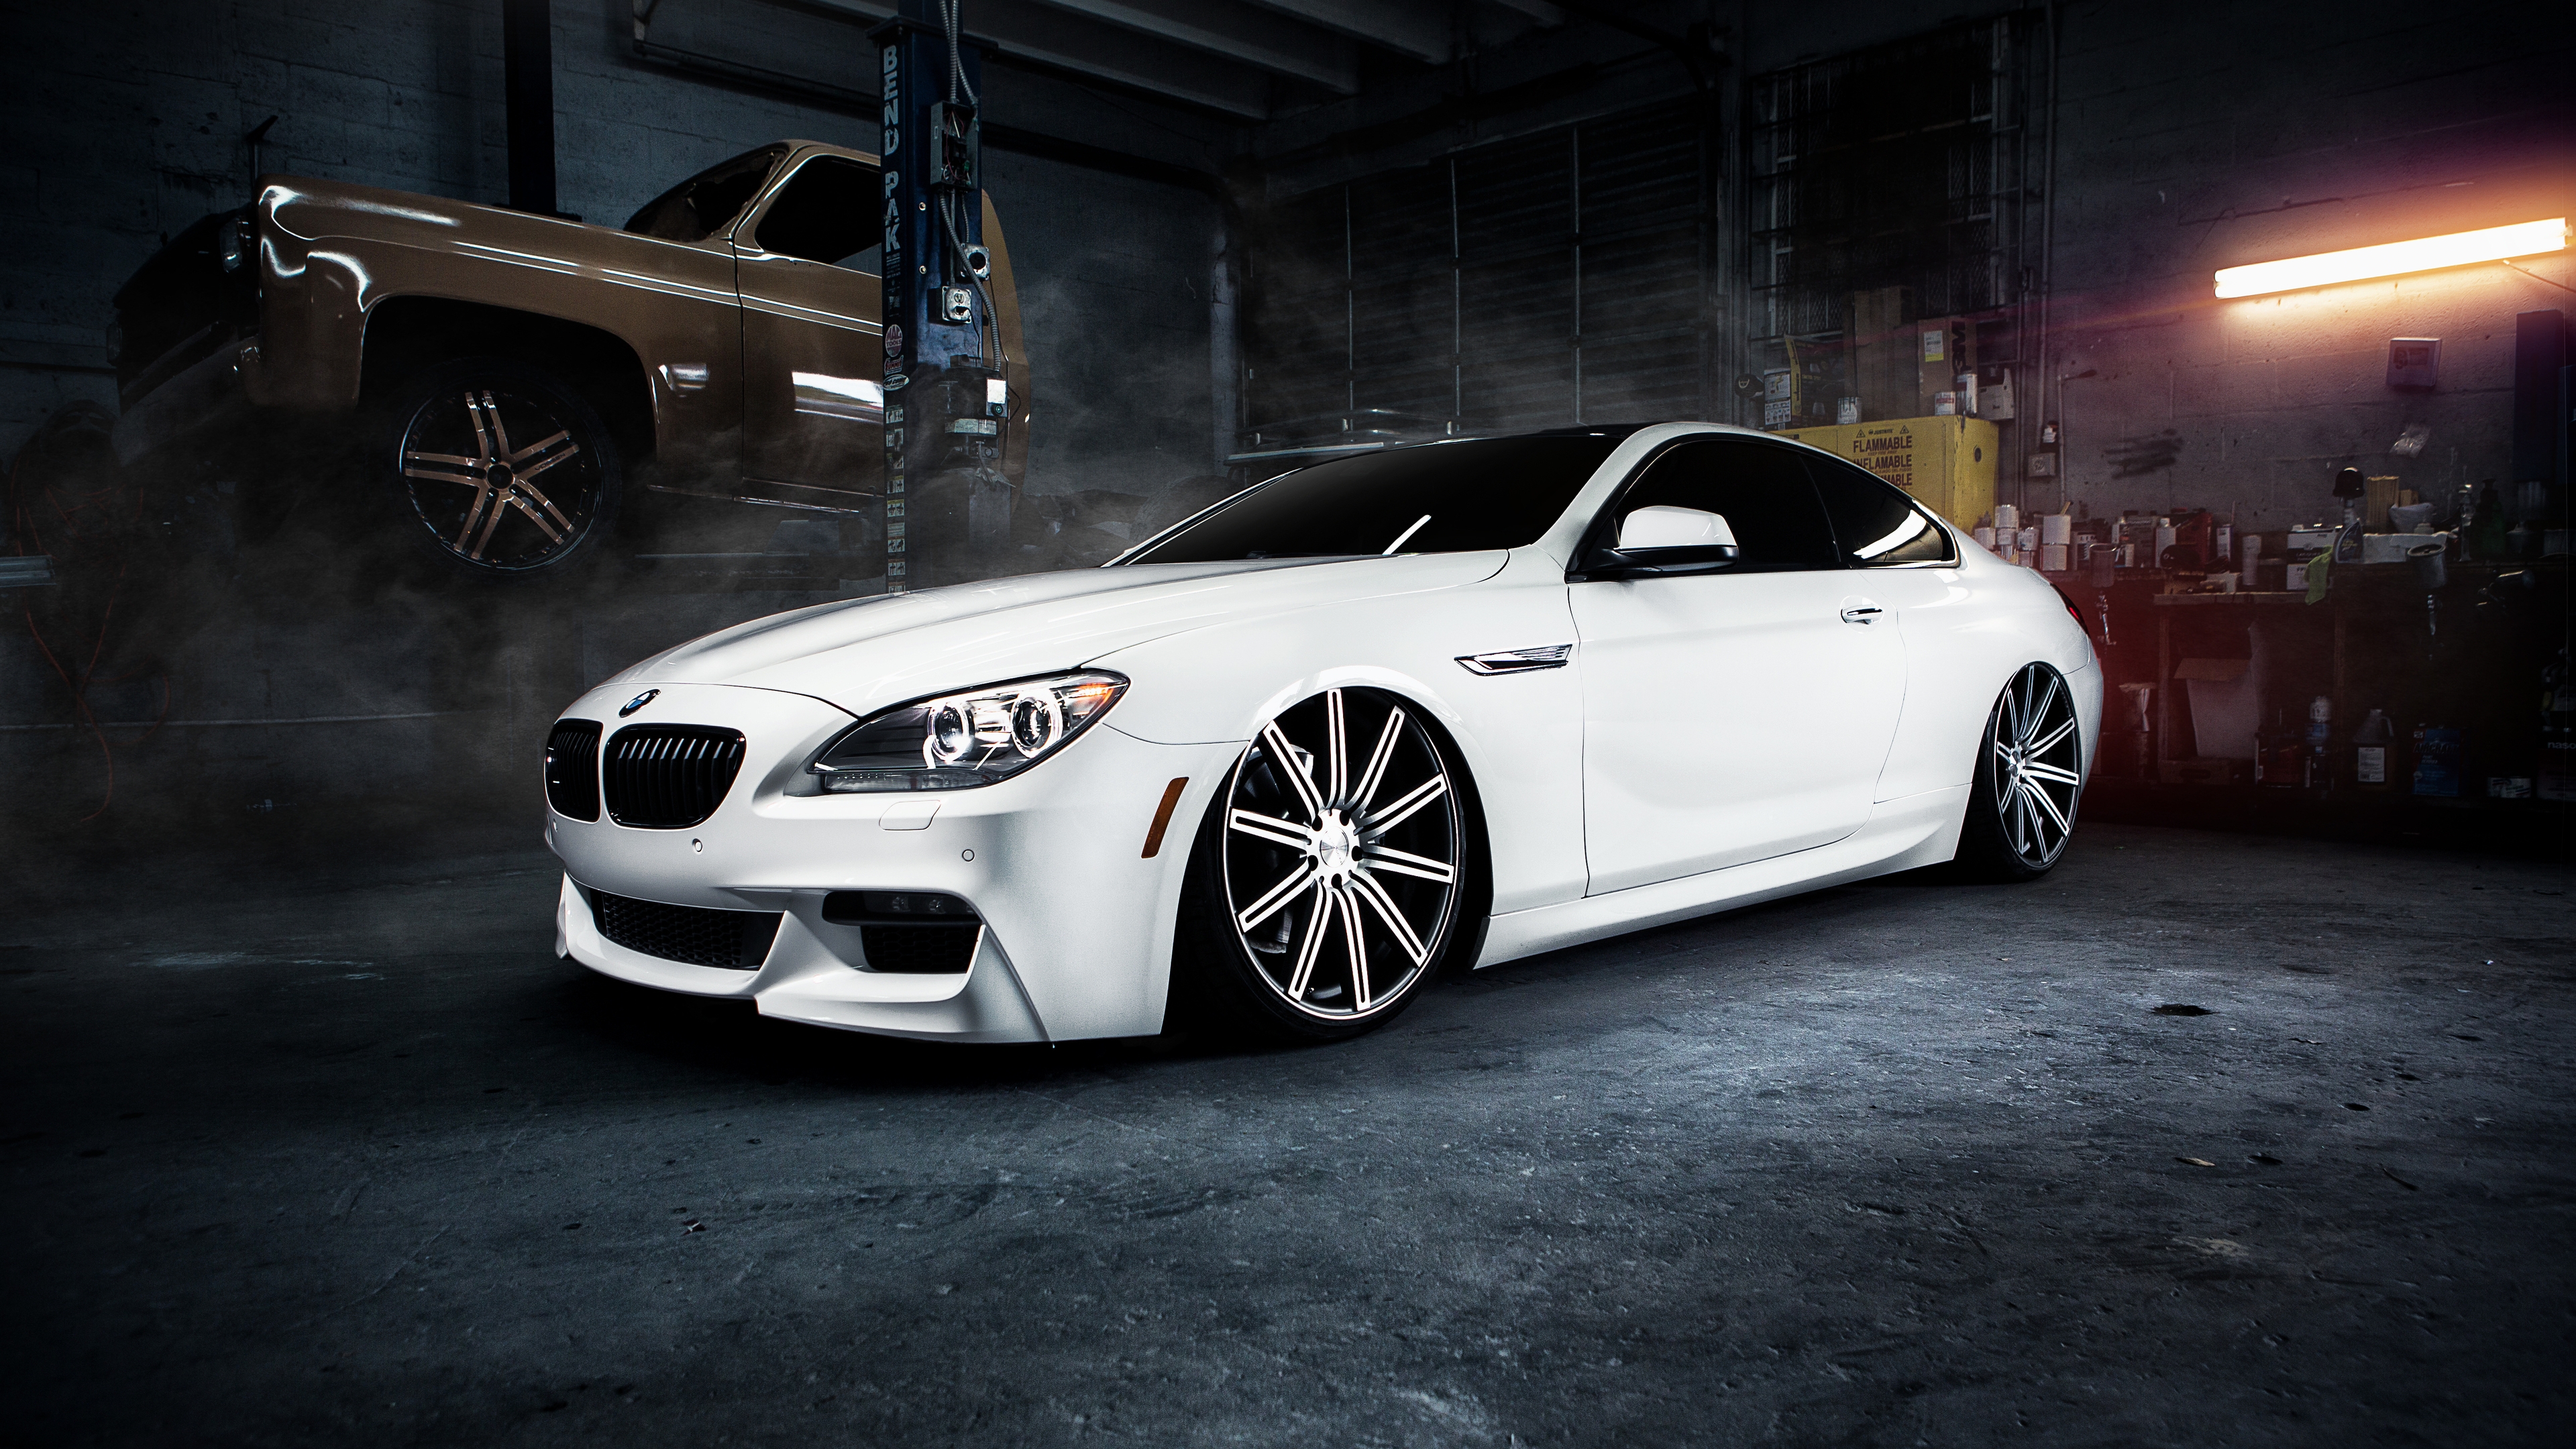 Image: BMW, m6, white, low profile, landing, garage, workshop